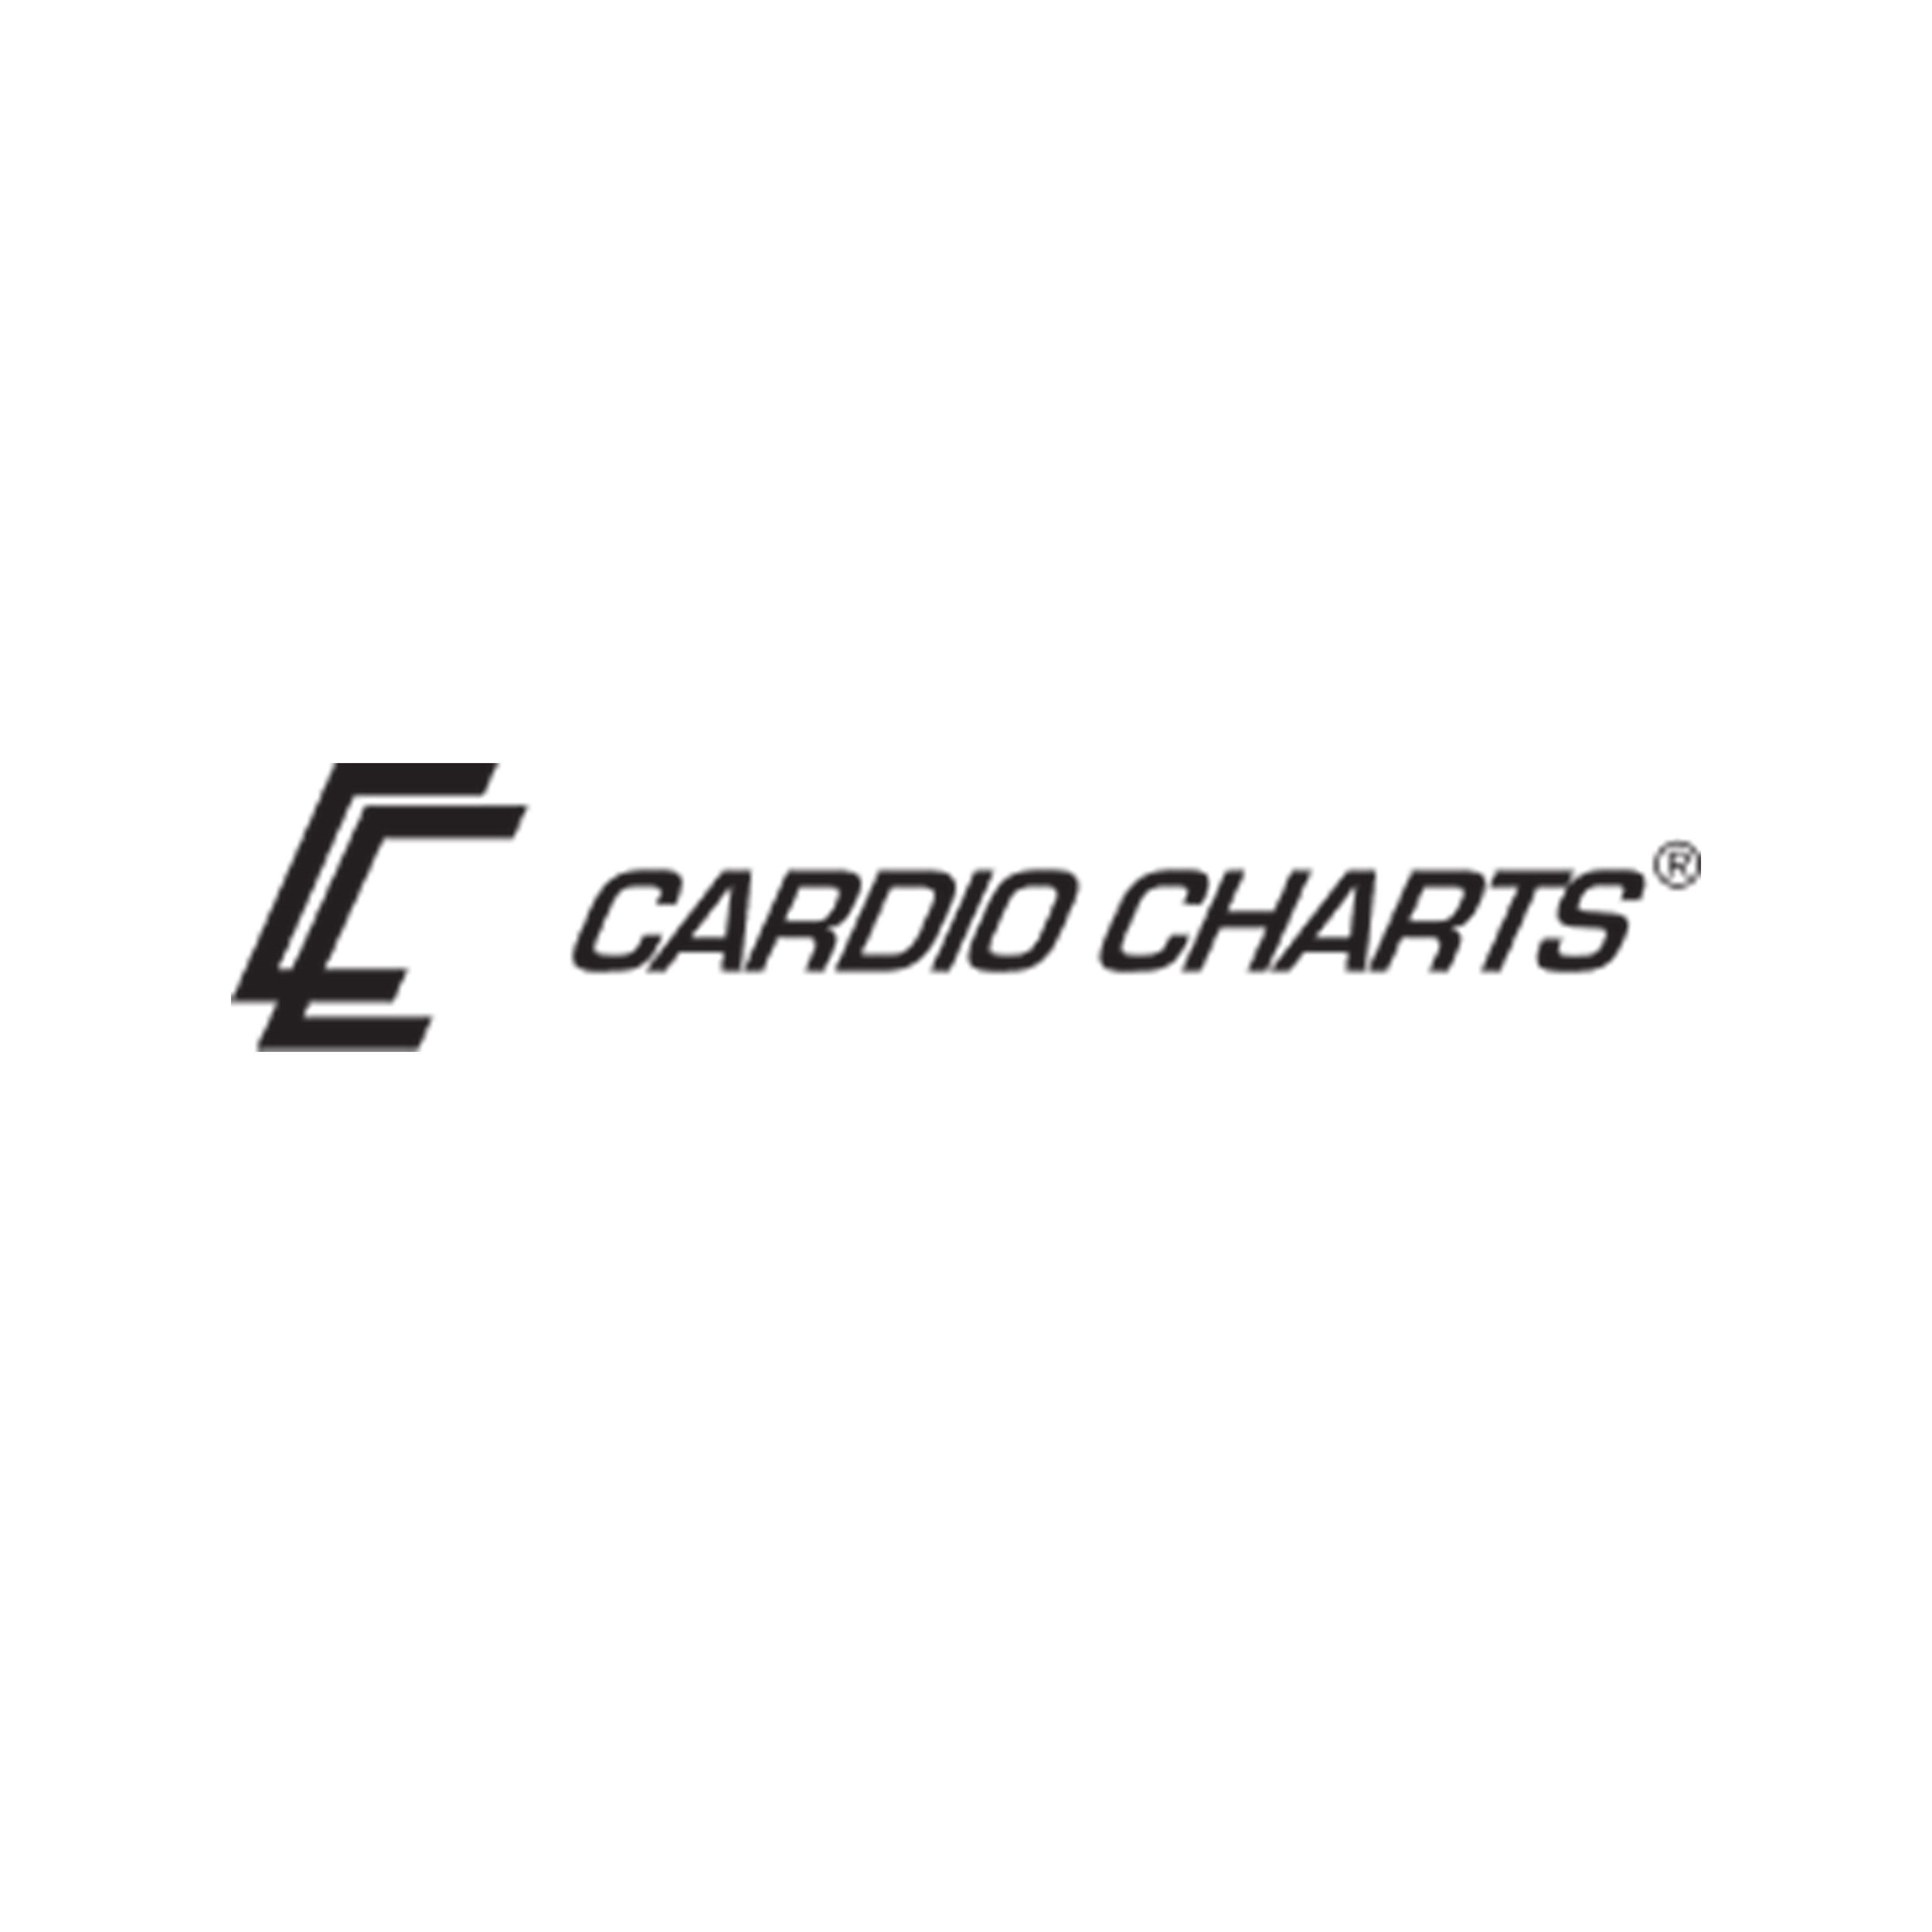 CARDIO CHARTS